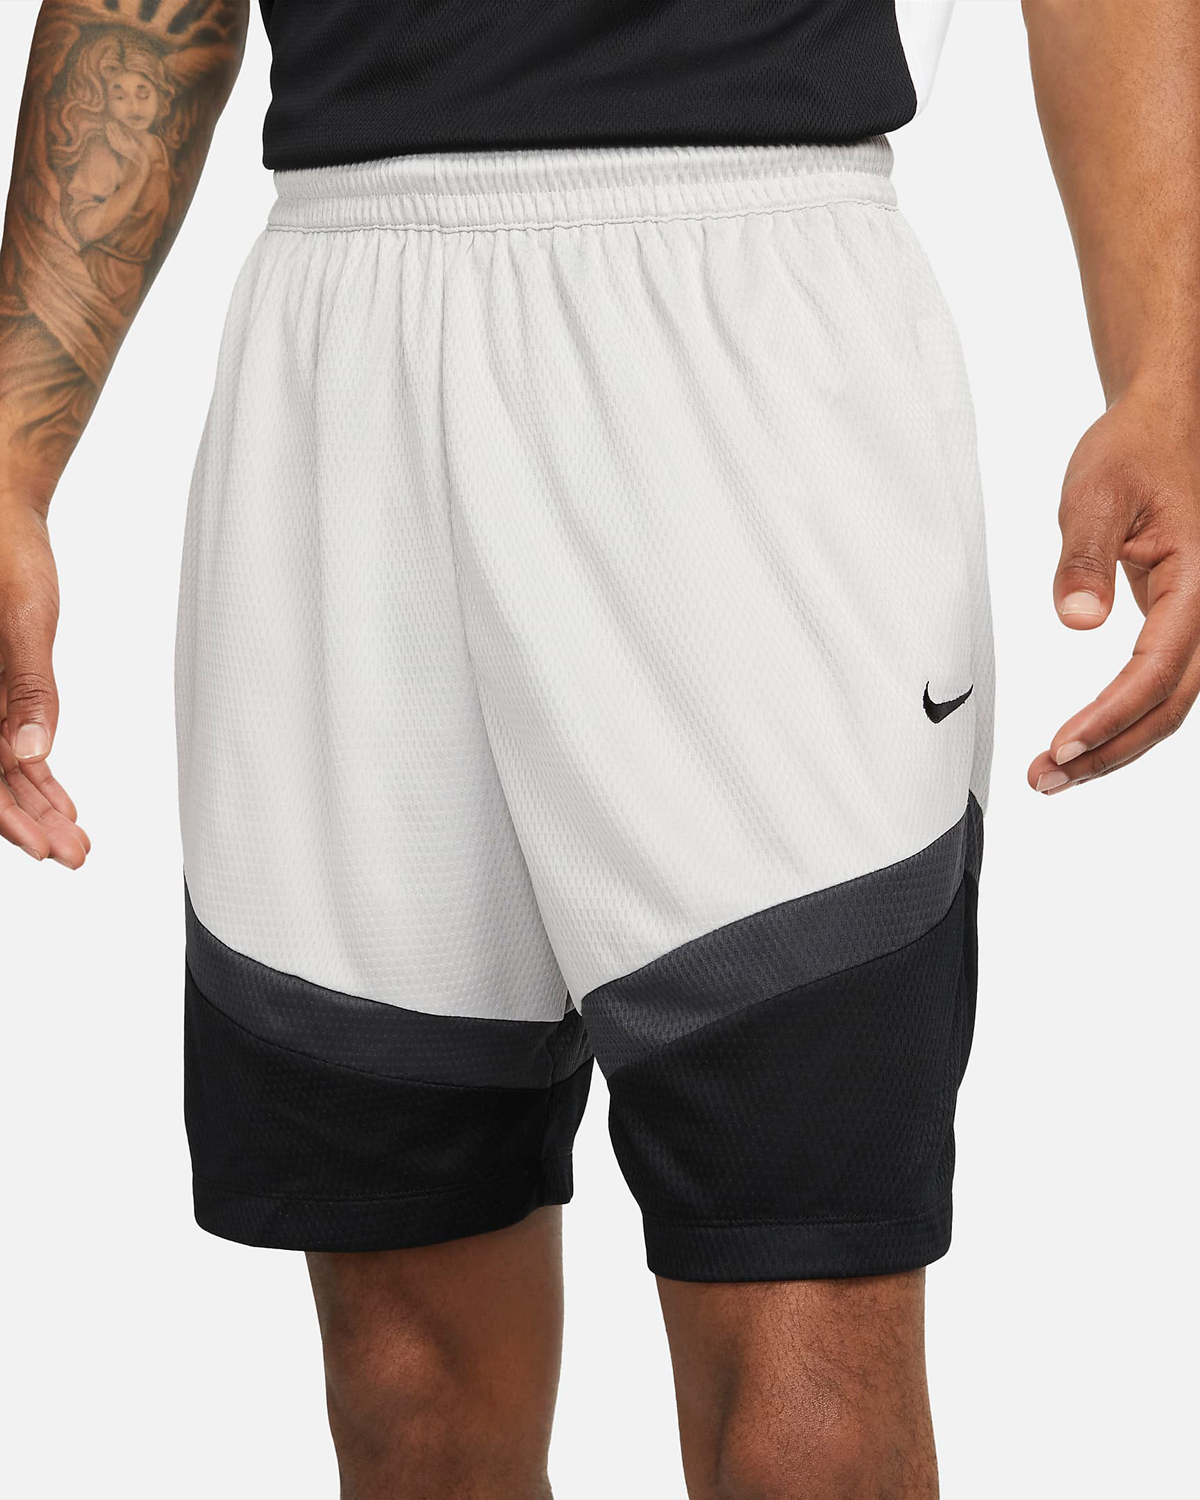 Nike-Icon-Basketball-Shorts-Light-Iron-Ore-Black